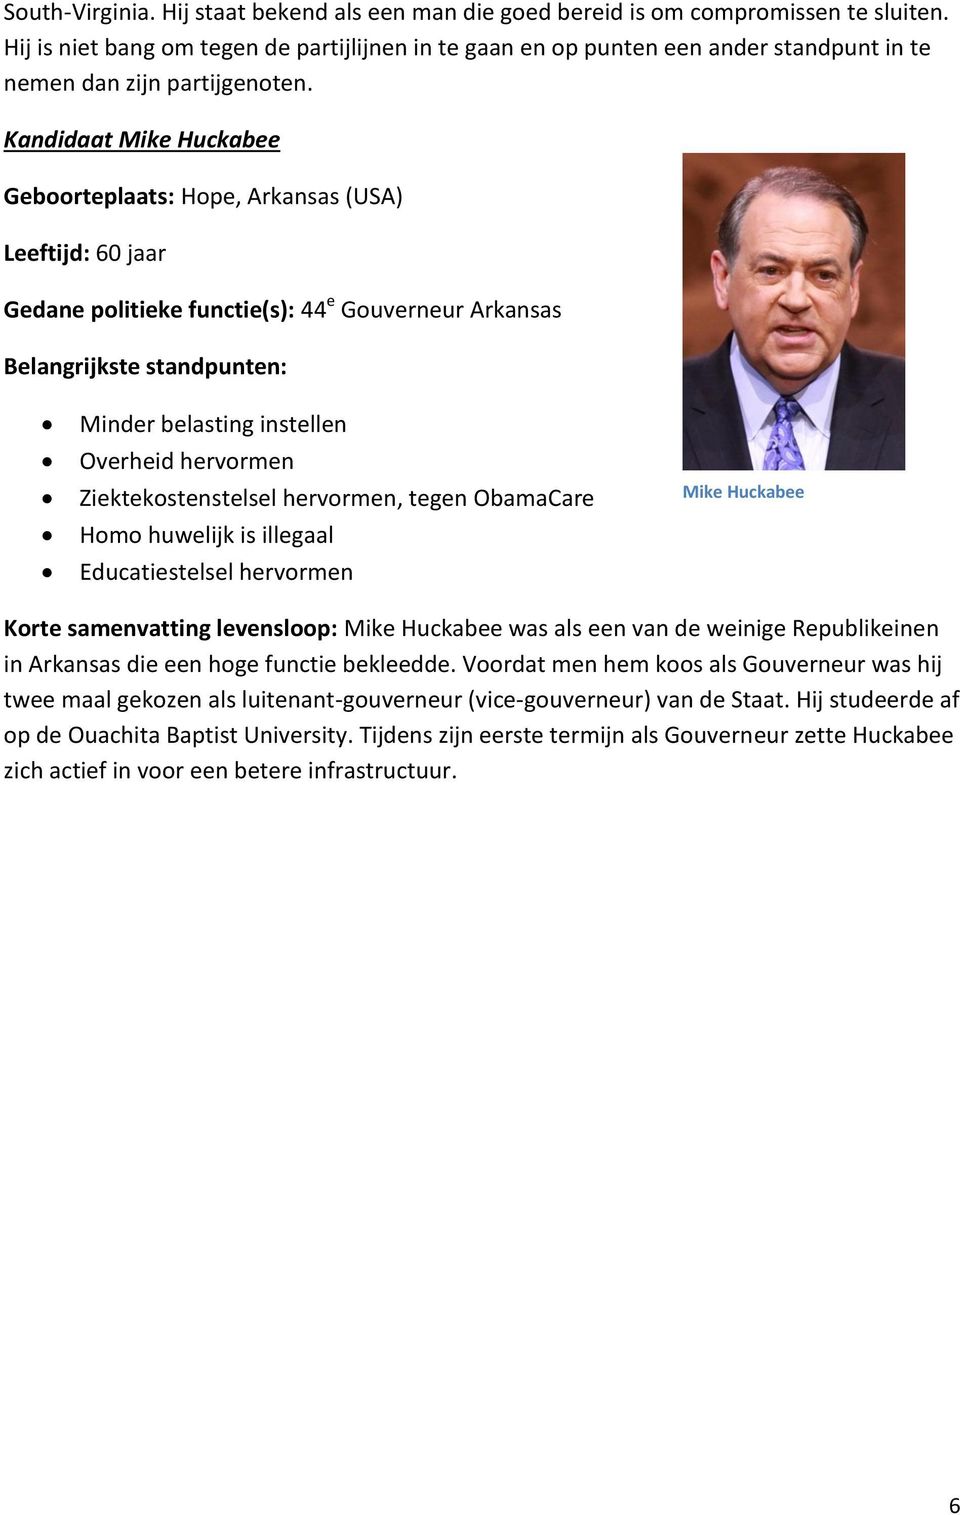 Kandidaat Mike Huckabee Geboorteplaats: Hope, Arkansas (USA) Leeftijd: 60 jaar 44 e Gouverneur Arkansas Minder belasting instellen Overheid hervormen Ziektekostenstelsel hervormen, tegen ObamaCare